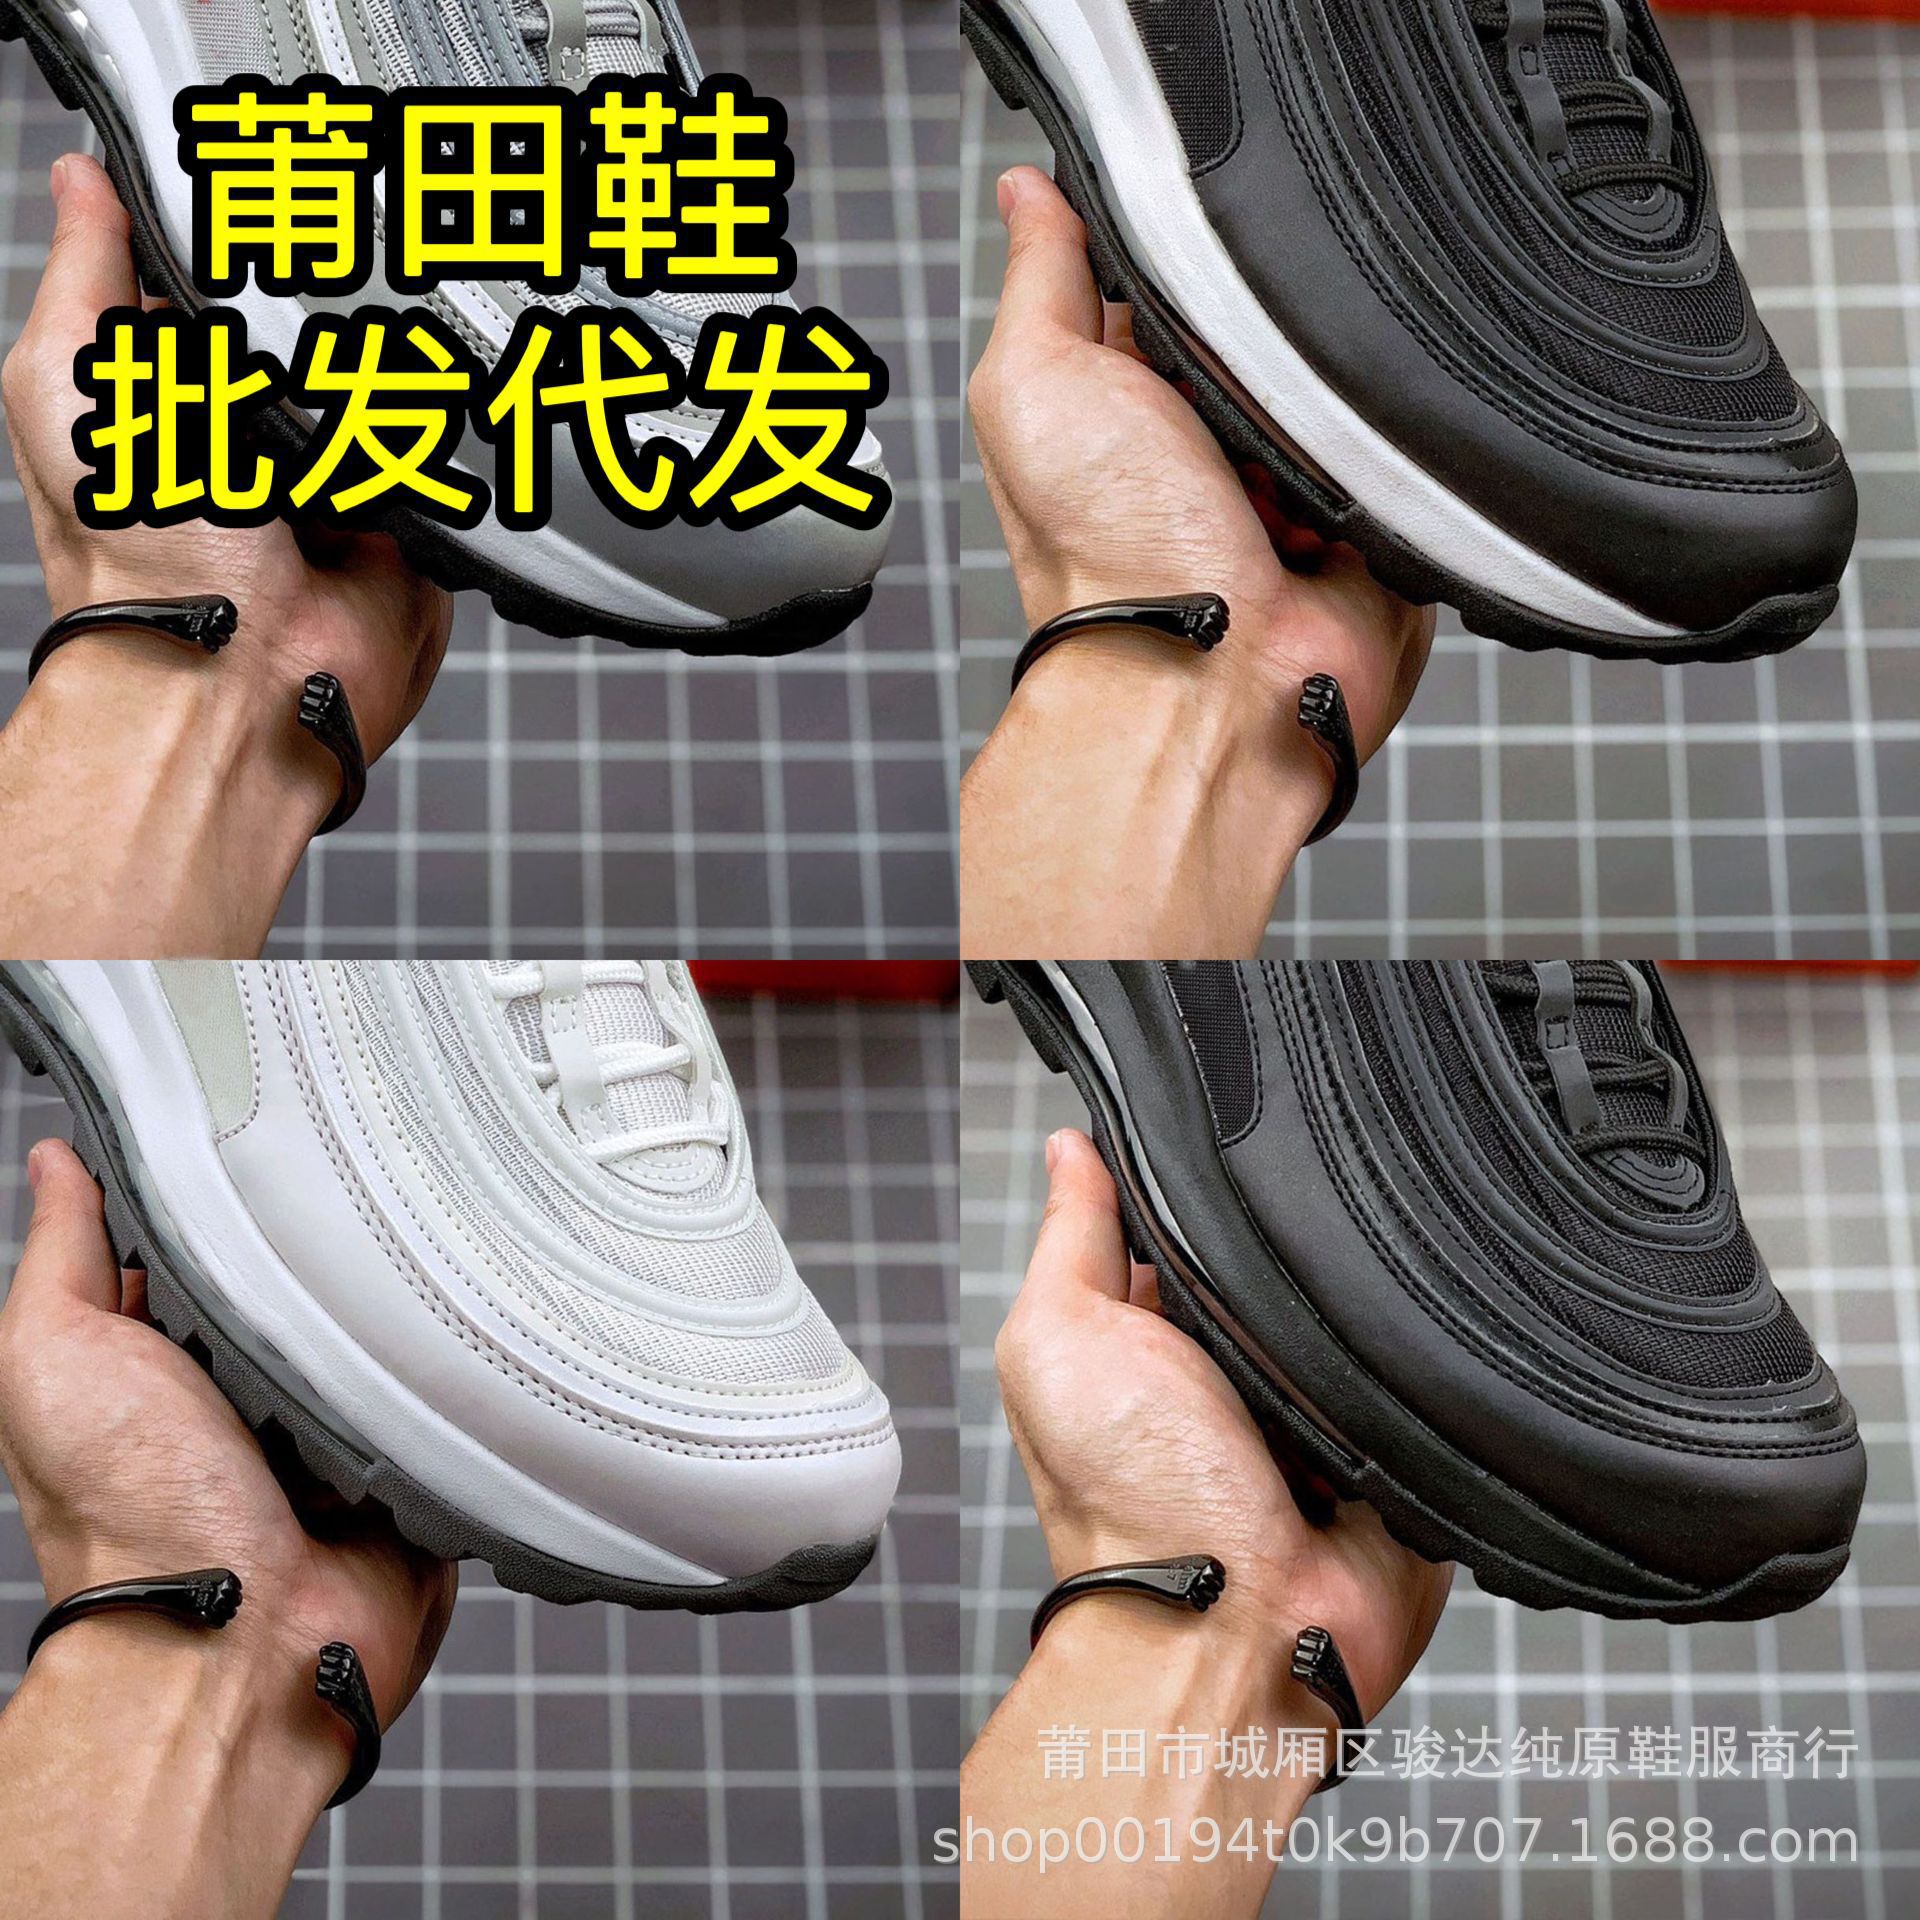 莆田纯原子弹头max97跑步鞋高定版本外贸单简约百搭运动气垫鞋